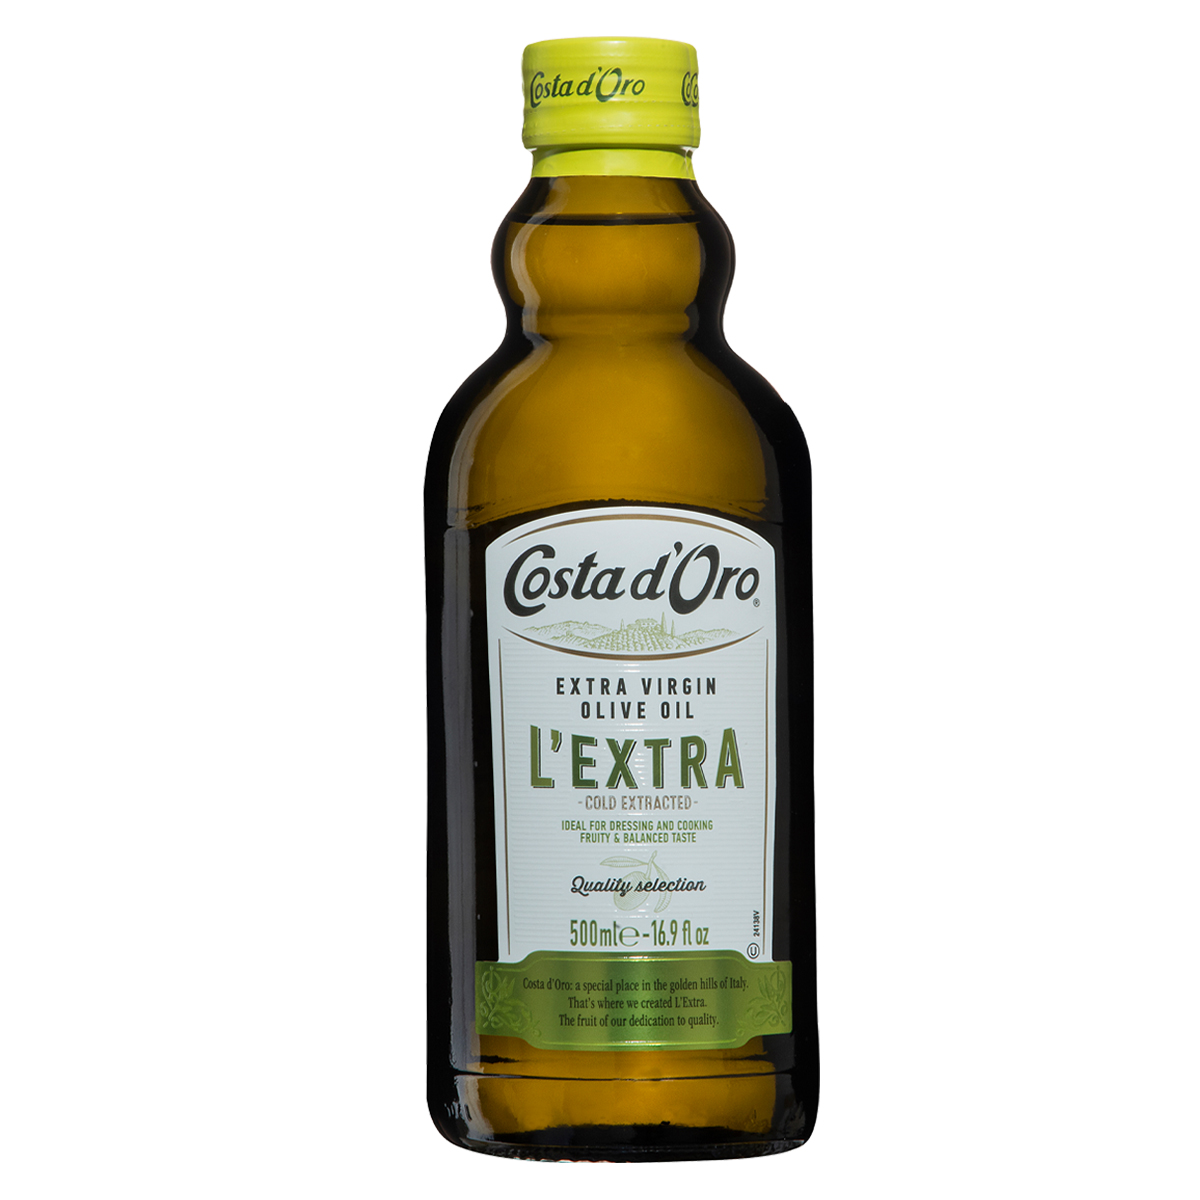 El aceite de oliva virgen extra se ha encarecido un 69% de media en los  supermercados a lo largo del último año